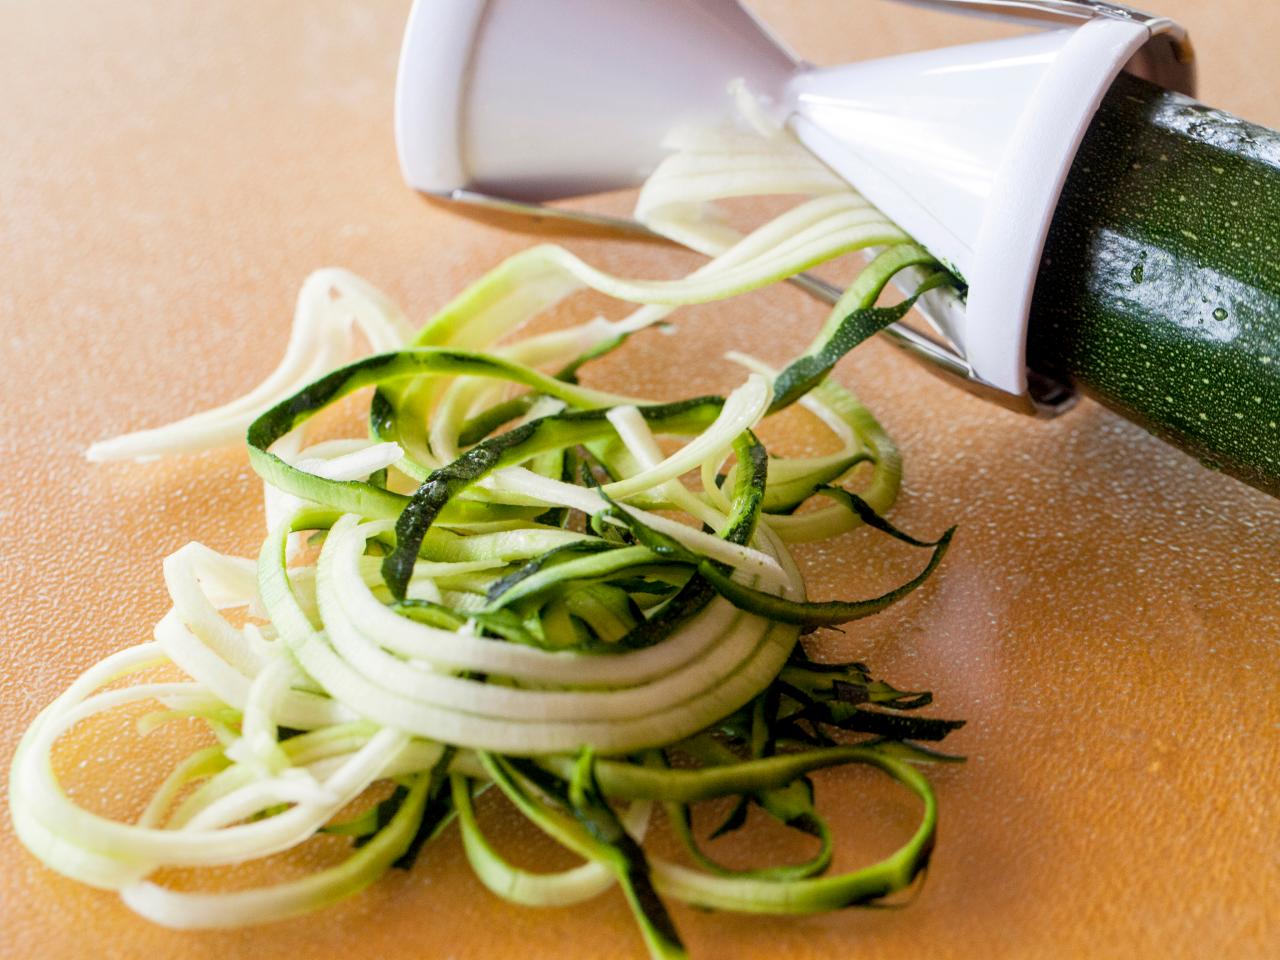 Veggetti Spiral Vegetable Slicer - Full Review & Video